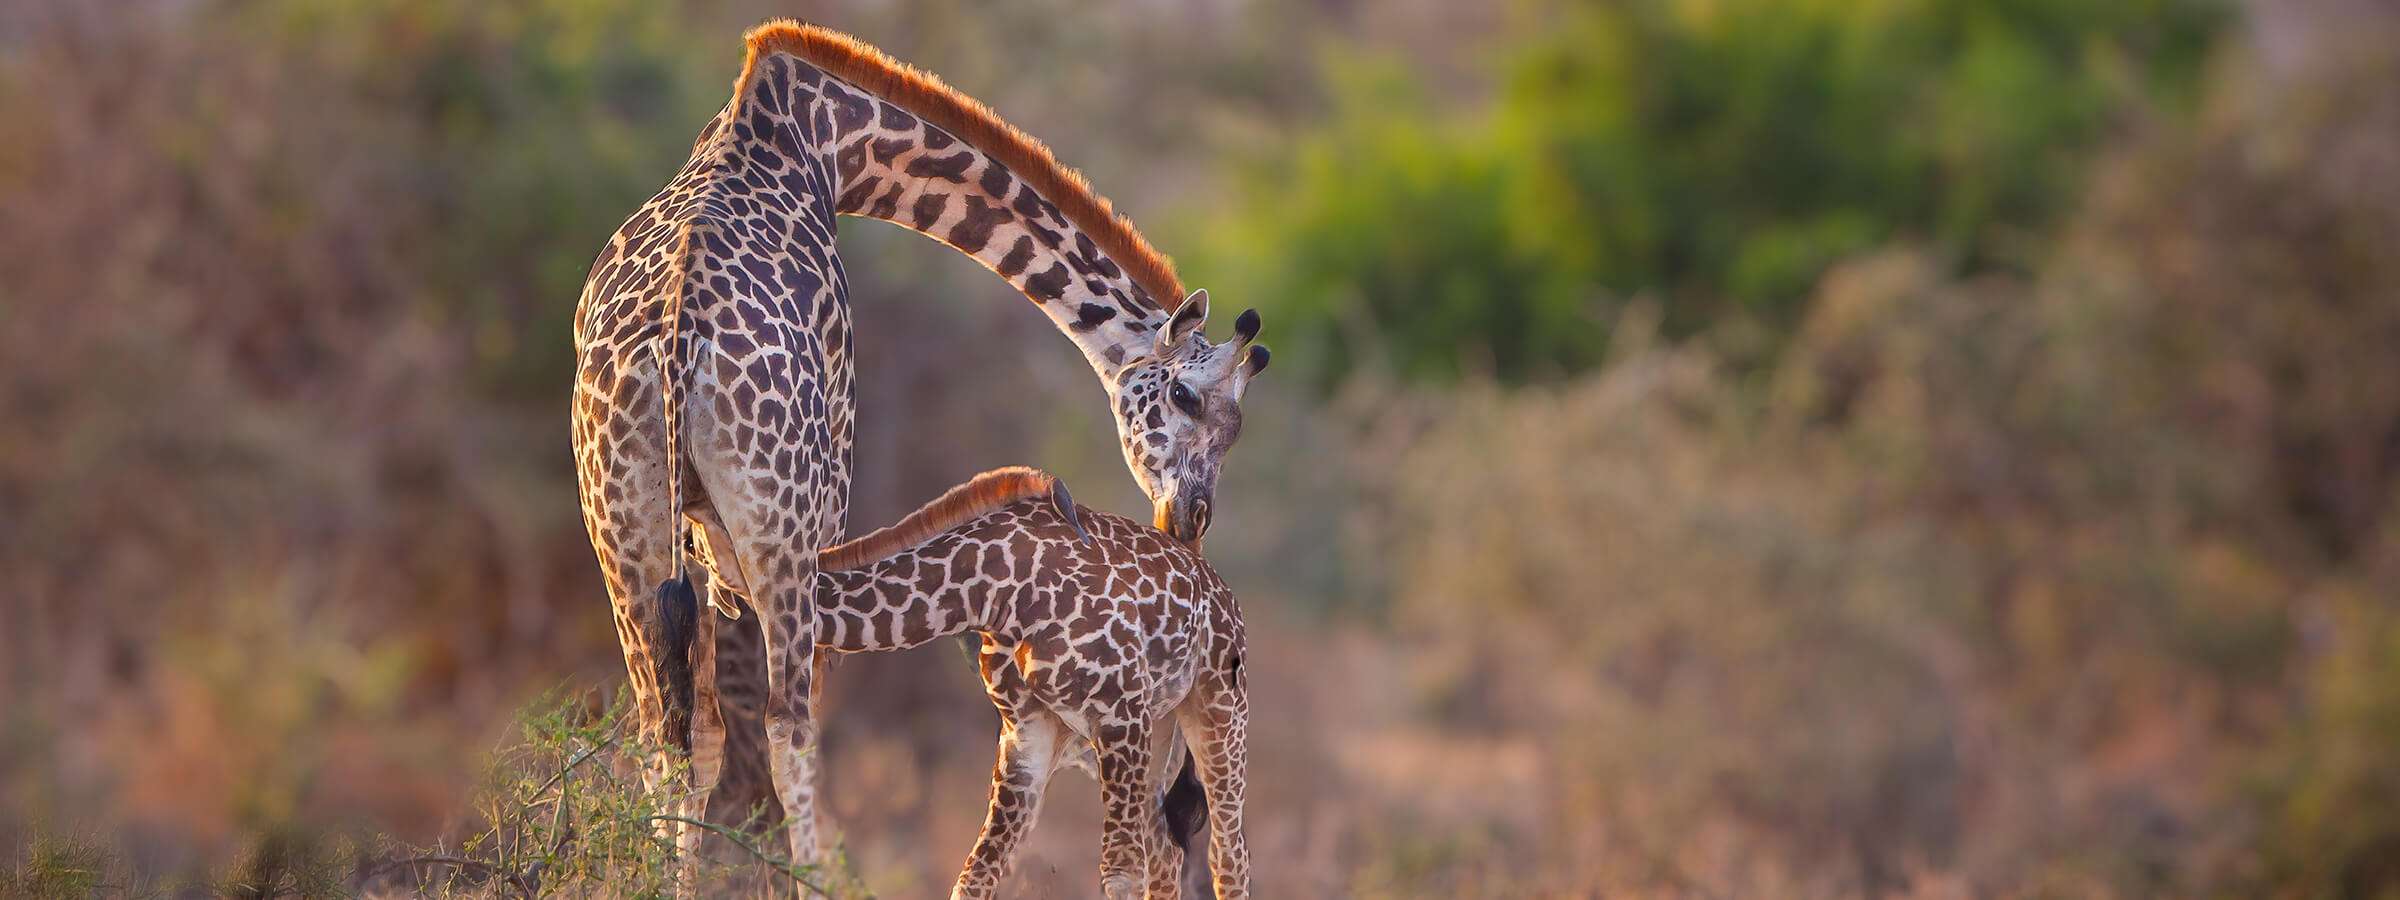 坦桑尼亚 - 第 1 后的五件事 - 关于长颈鹿你所不知道的 5 件事